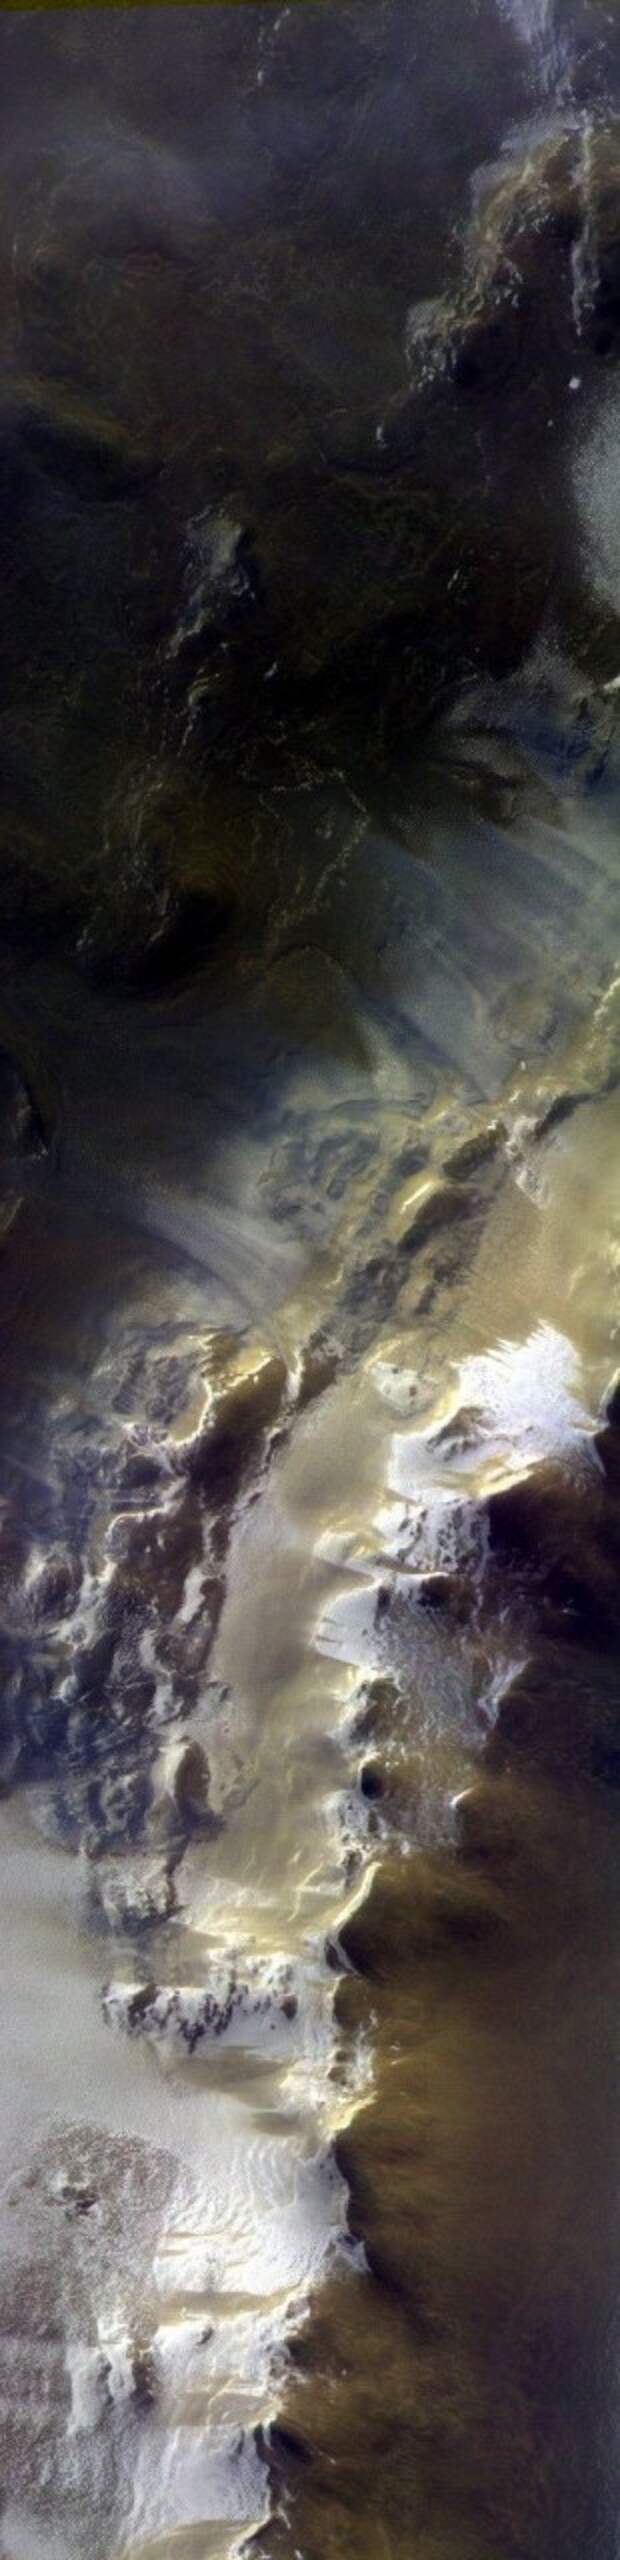 Получены первые цветные фотографии поверхности Марса РЕОМ, космос, планета Марс, снимки Марса